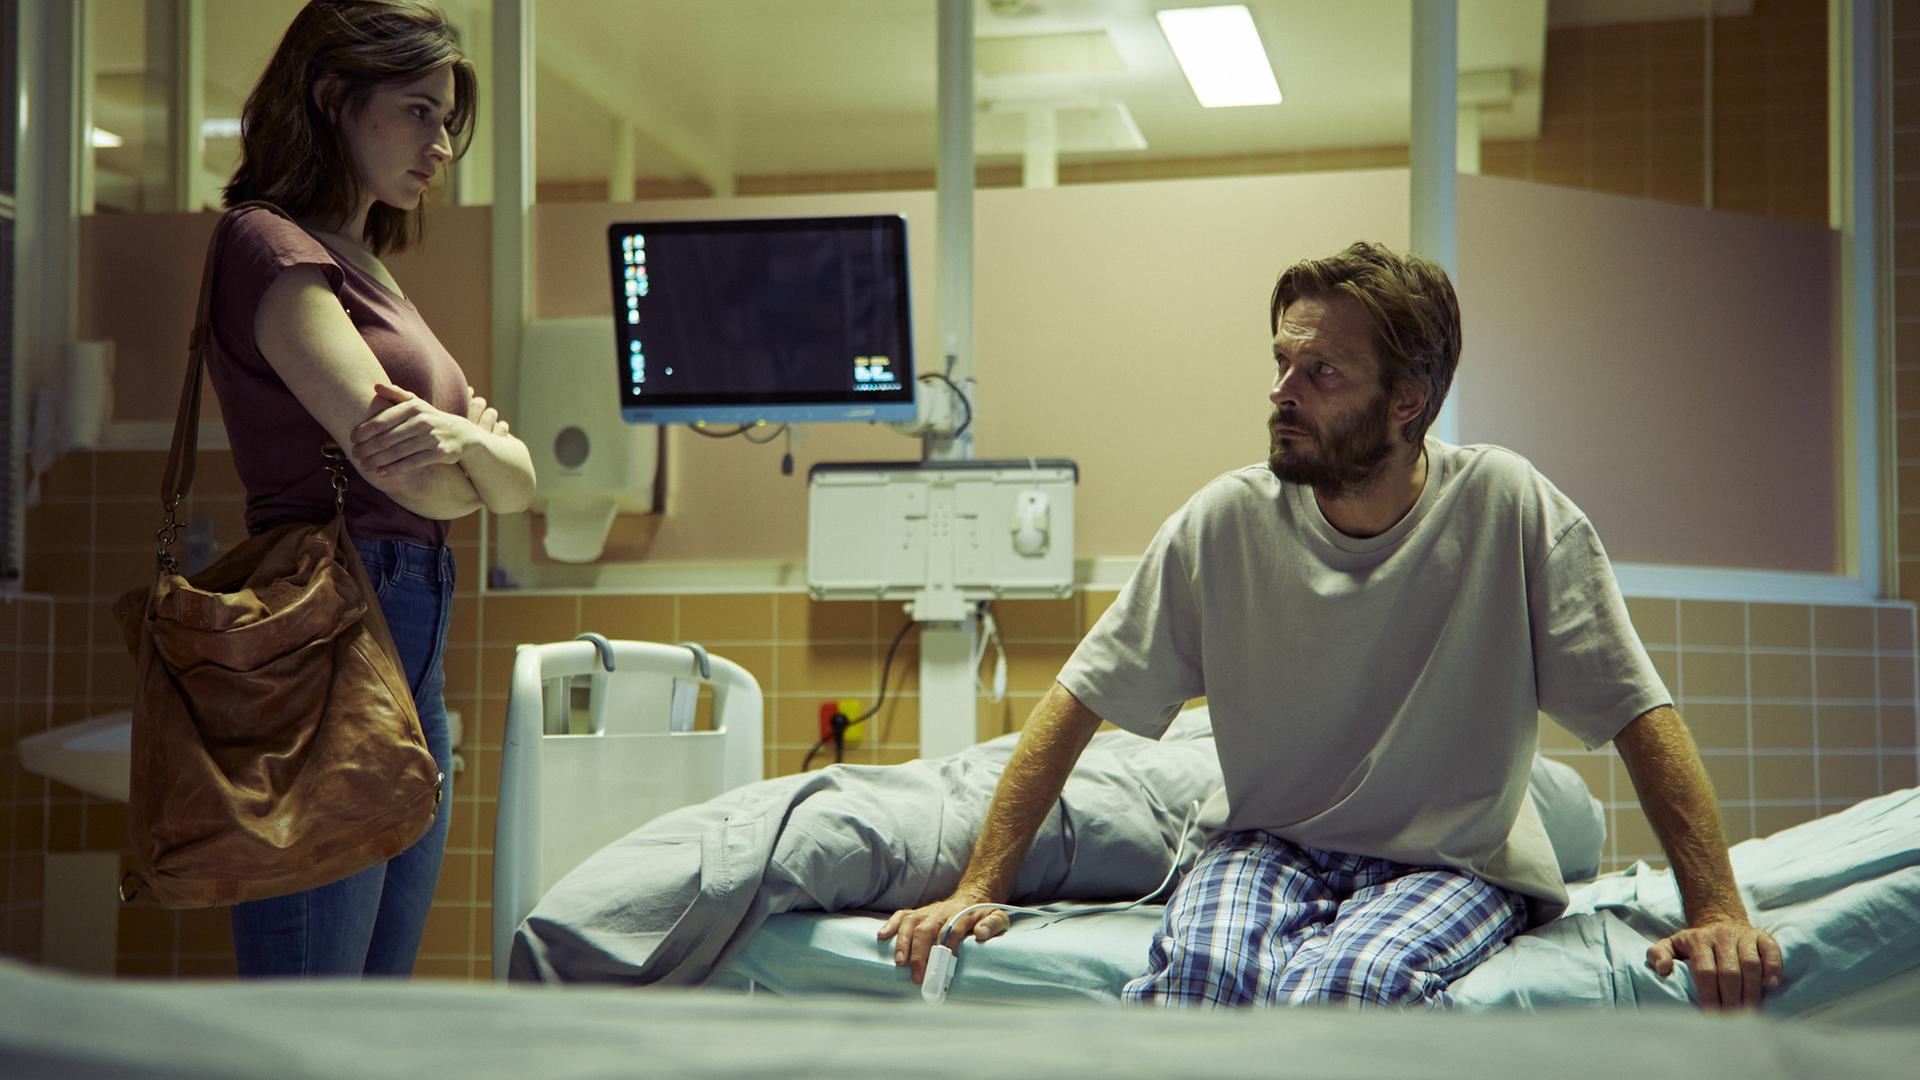 "Der Schatten - Schuld": Norah (Deleila Piasko) steht im Krankenhaus am Bett des Performance-Künstlers Wolfgang Balder (Andreas Pietschmann). Er sitzt am Rand des Bettes und stützt sich mit den Armen ab. Beide schauen sich an. Im Hintergrund ist ein Überwachungsmonitor zu sehen.